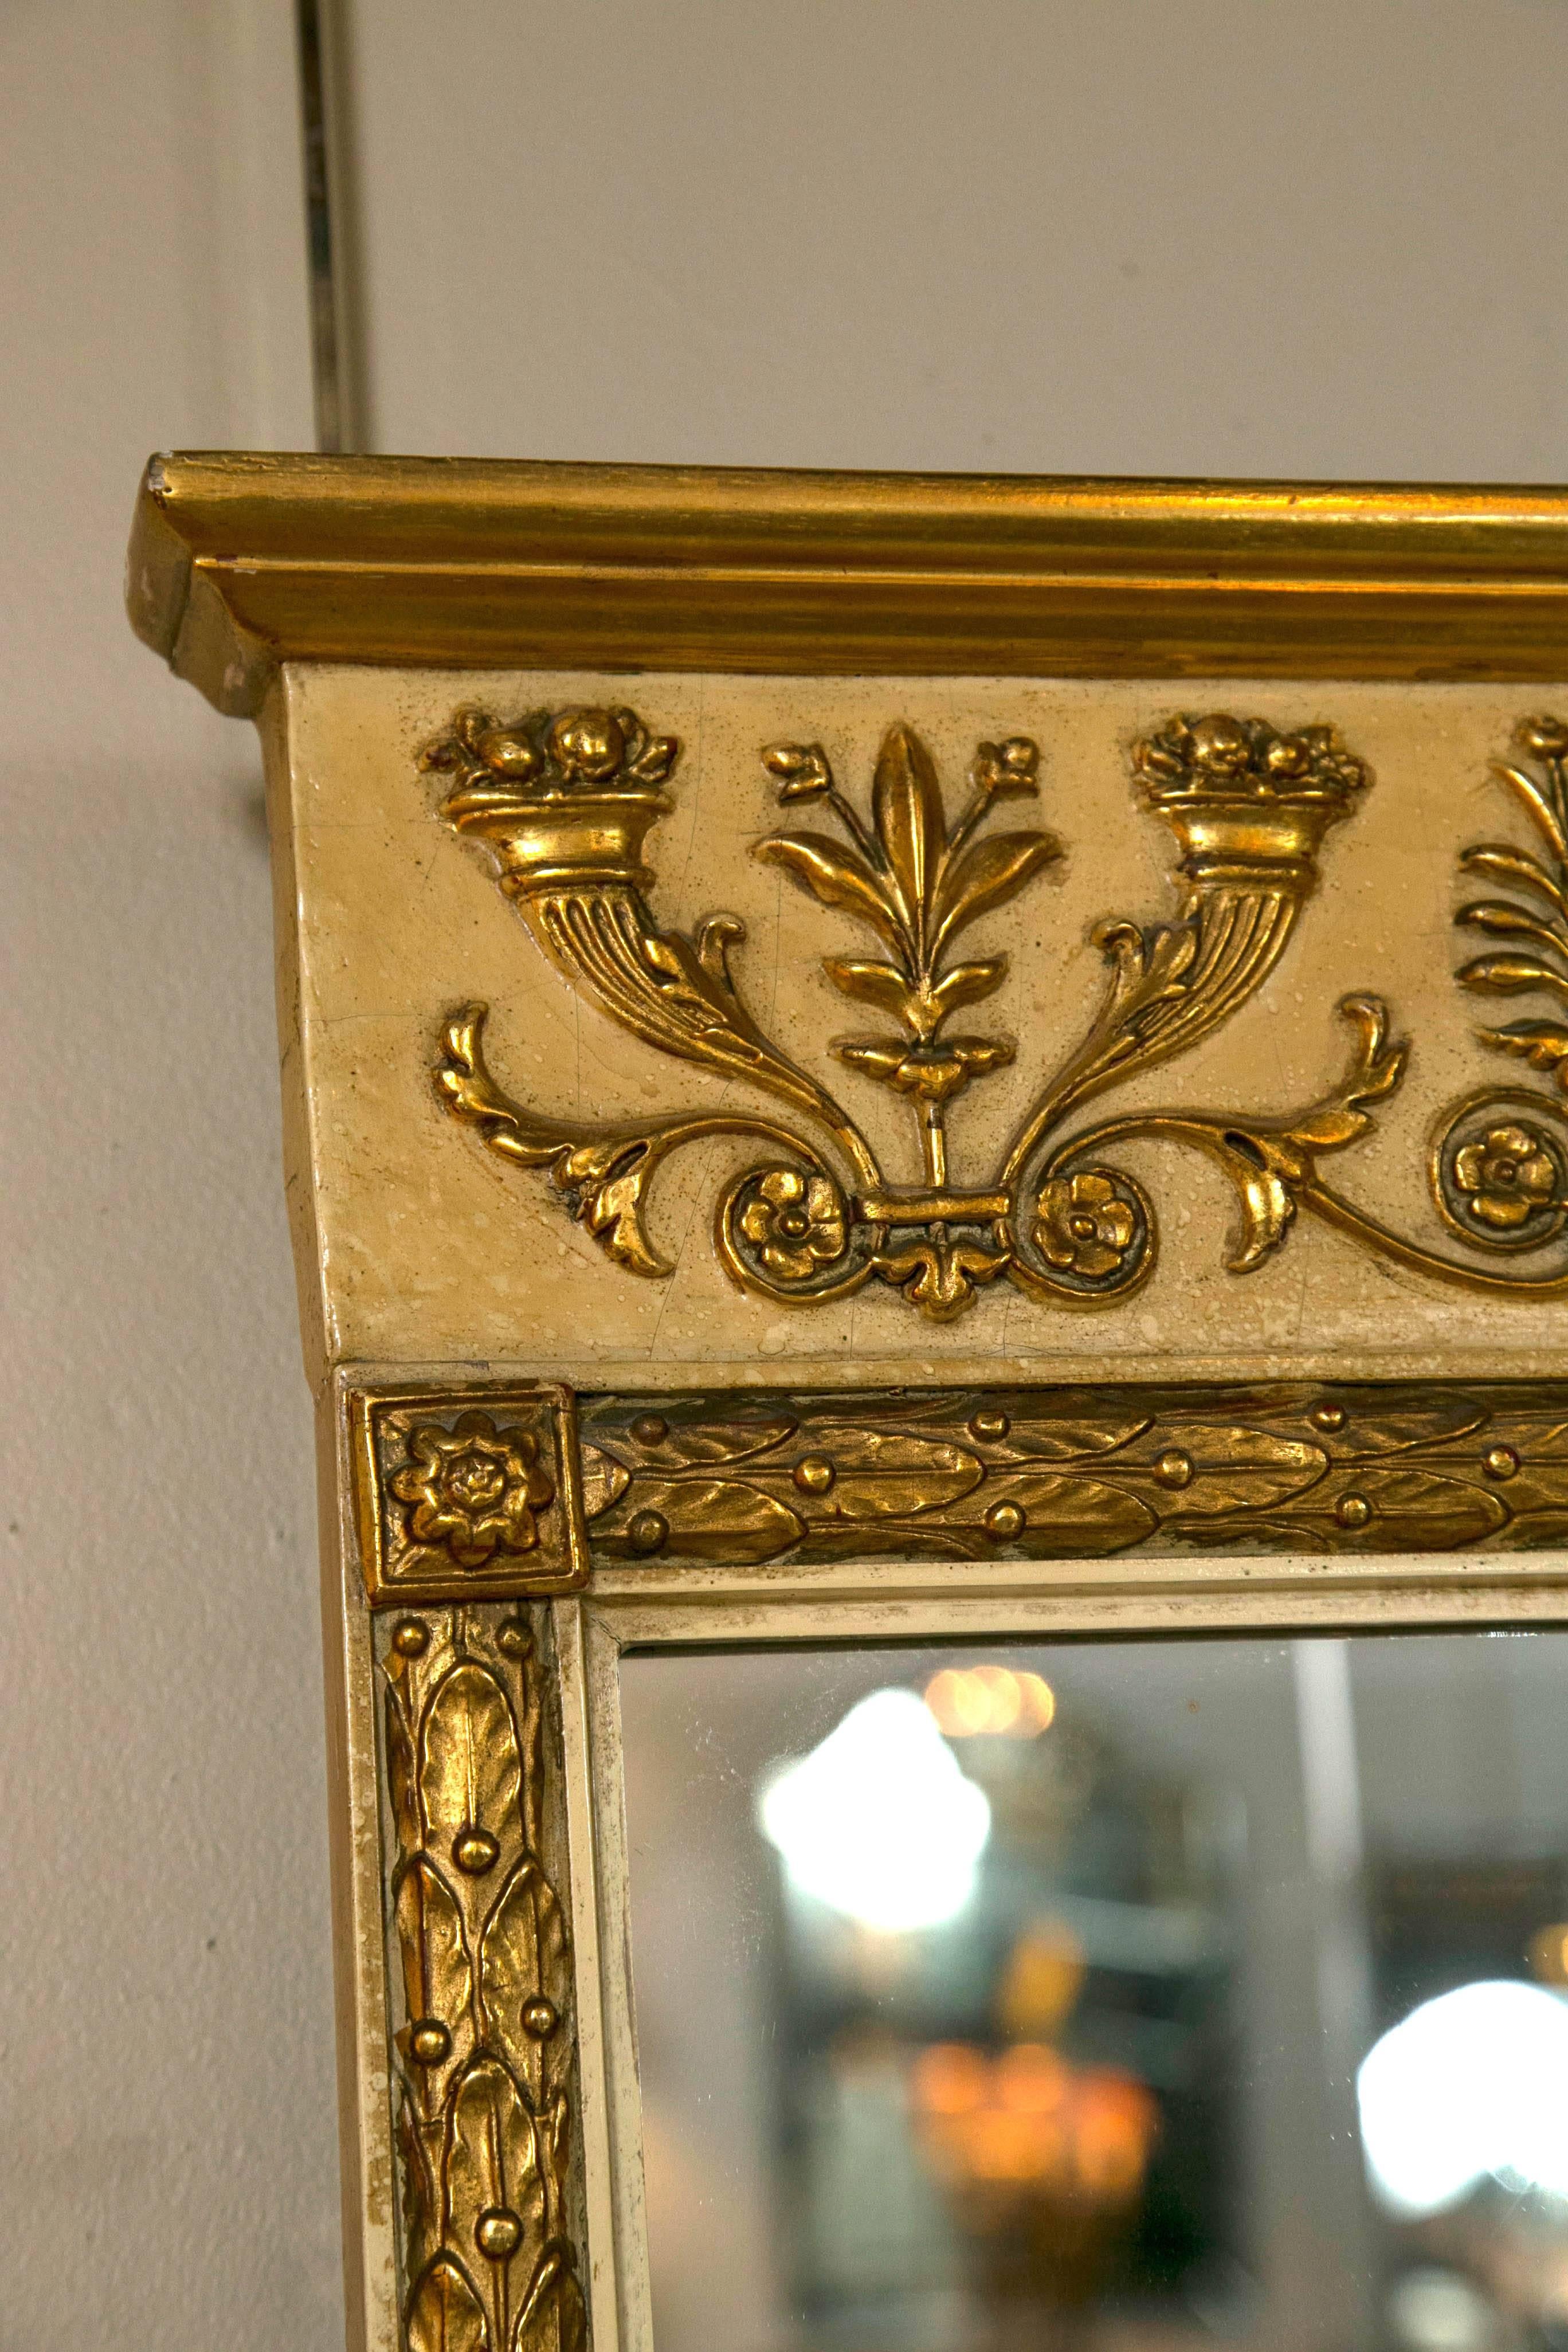 Regency Schmieg & Kotzian Gilt Gold Hand-Carved Rectangular Mirror